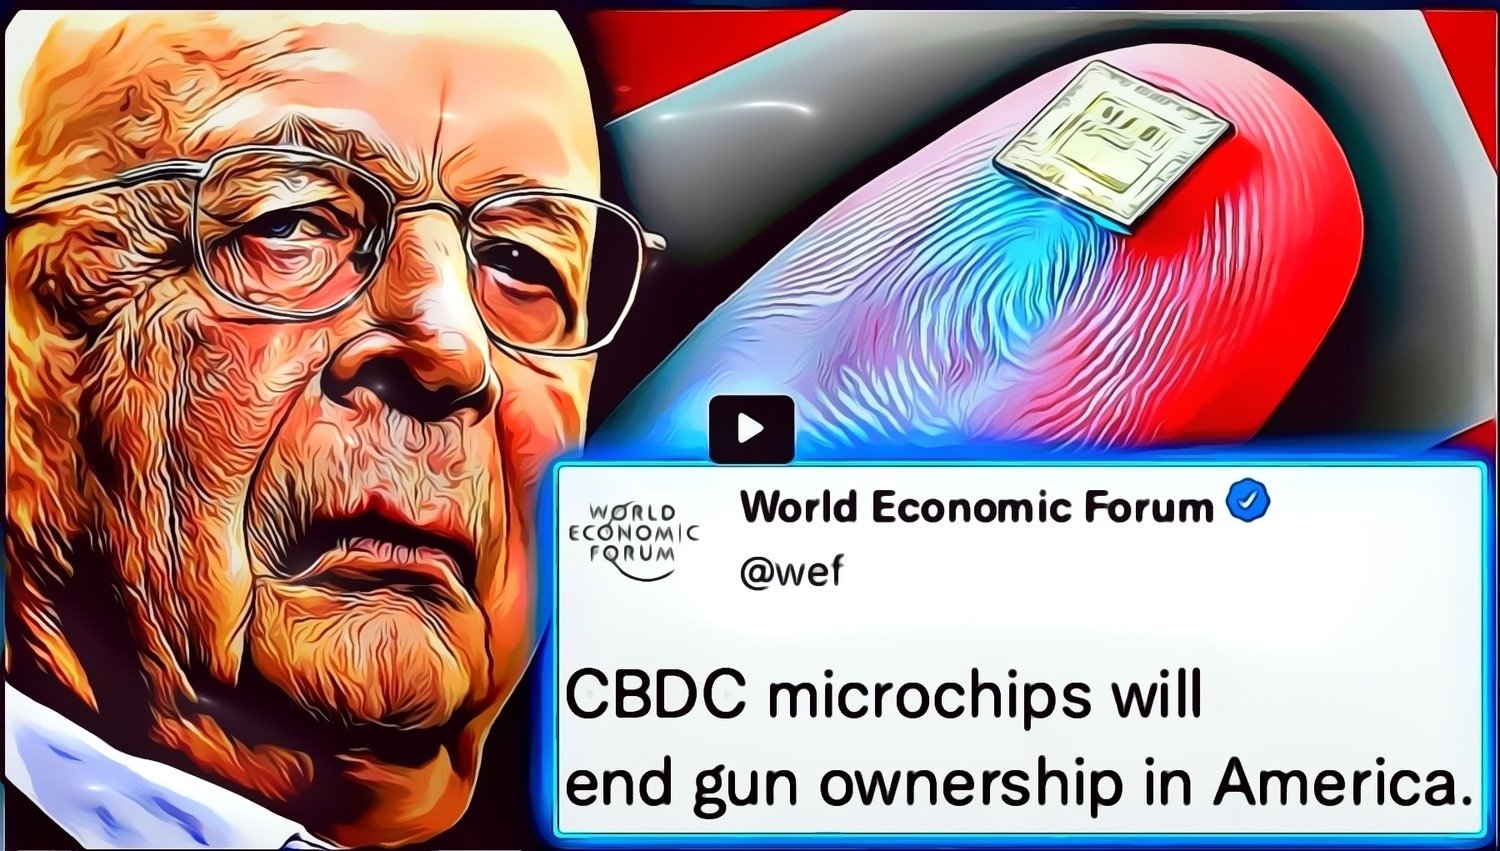 WEF lanseeraa “pedon merkin”, CBDC-mikrosirun “lopettaakseen aseiden omistuksen Amerikassa”